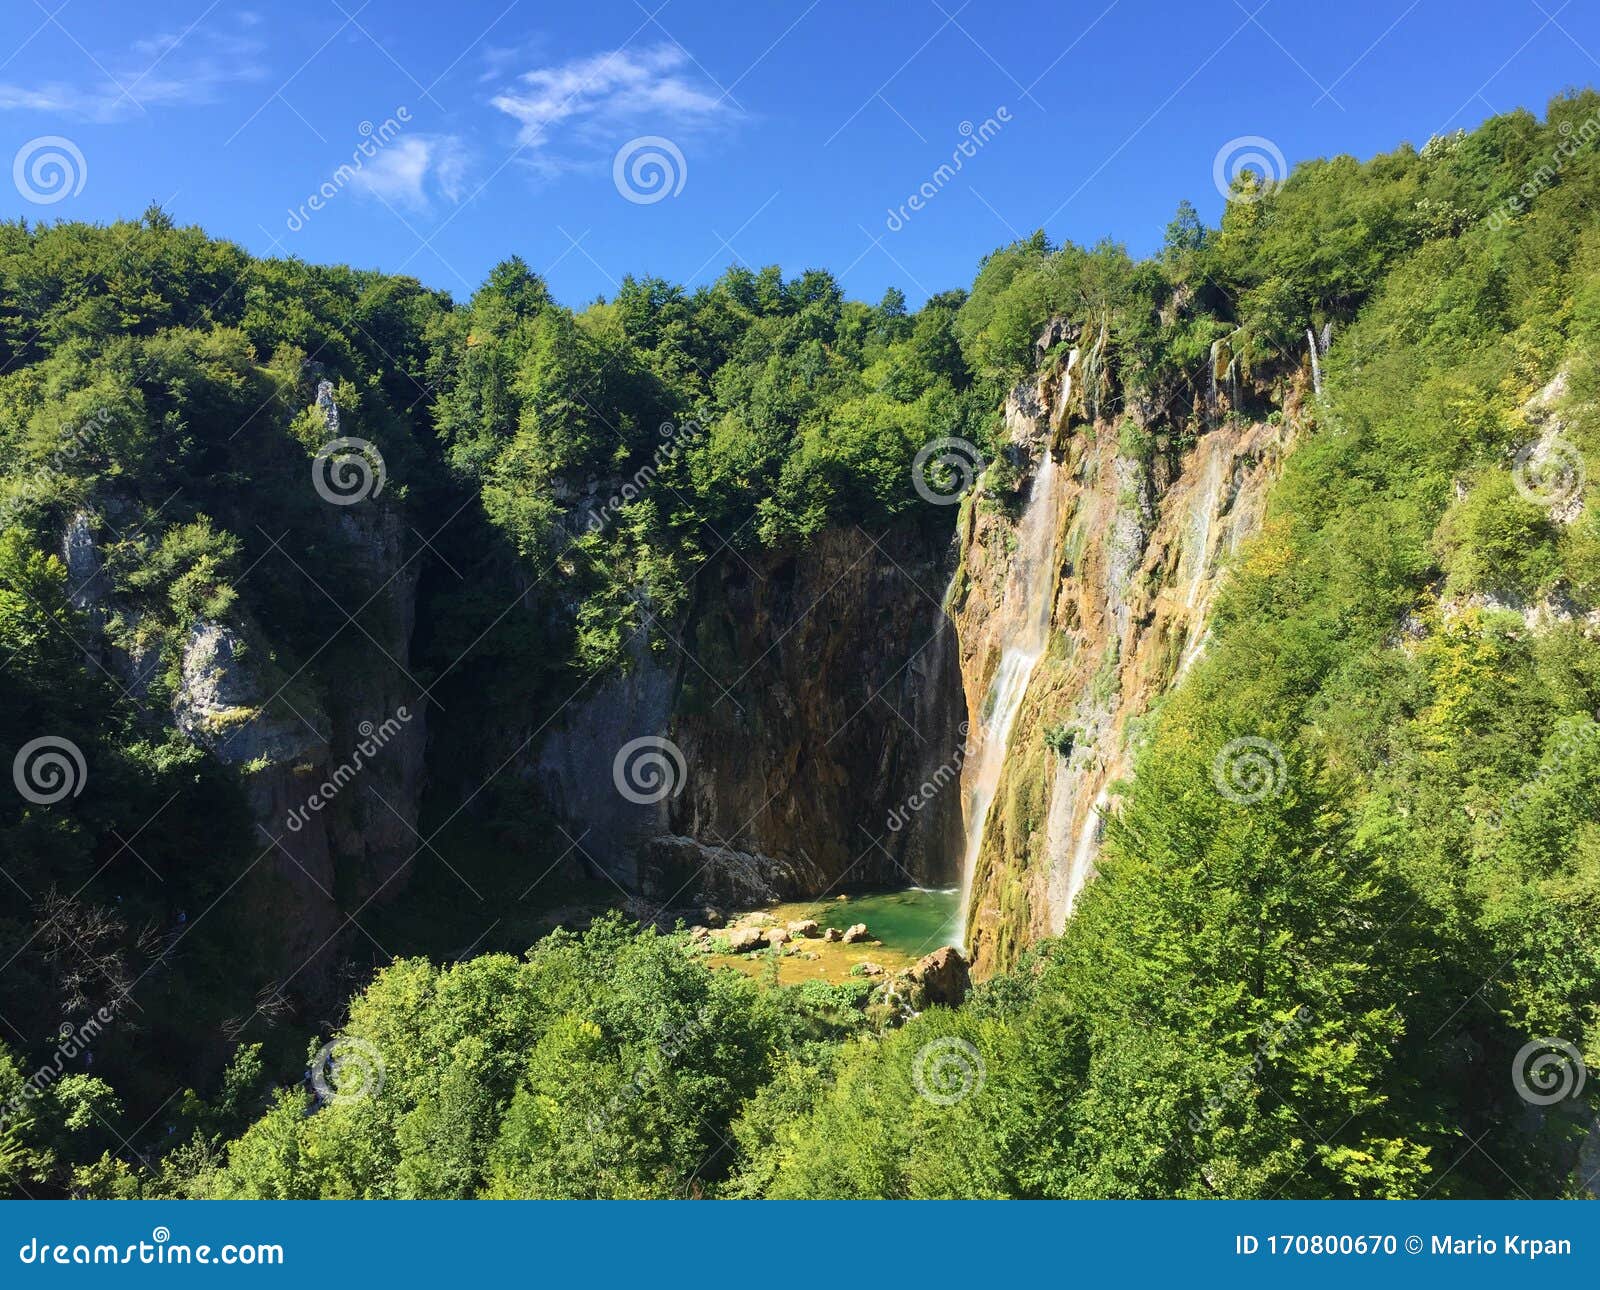 big waterfall veliki slap or slap plitvica, plitvice lakes national park or nacionalni park plitvicka jezera